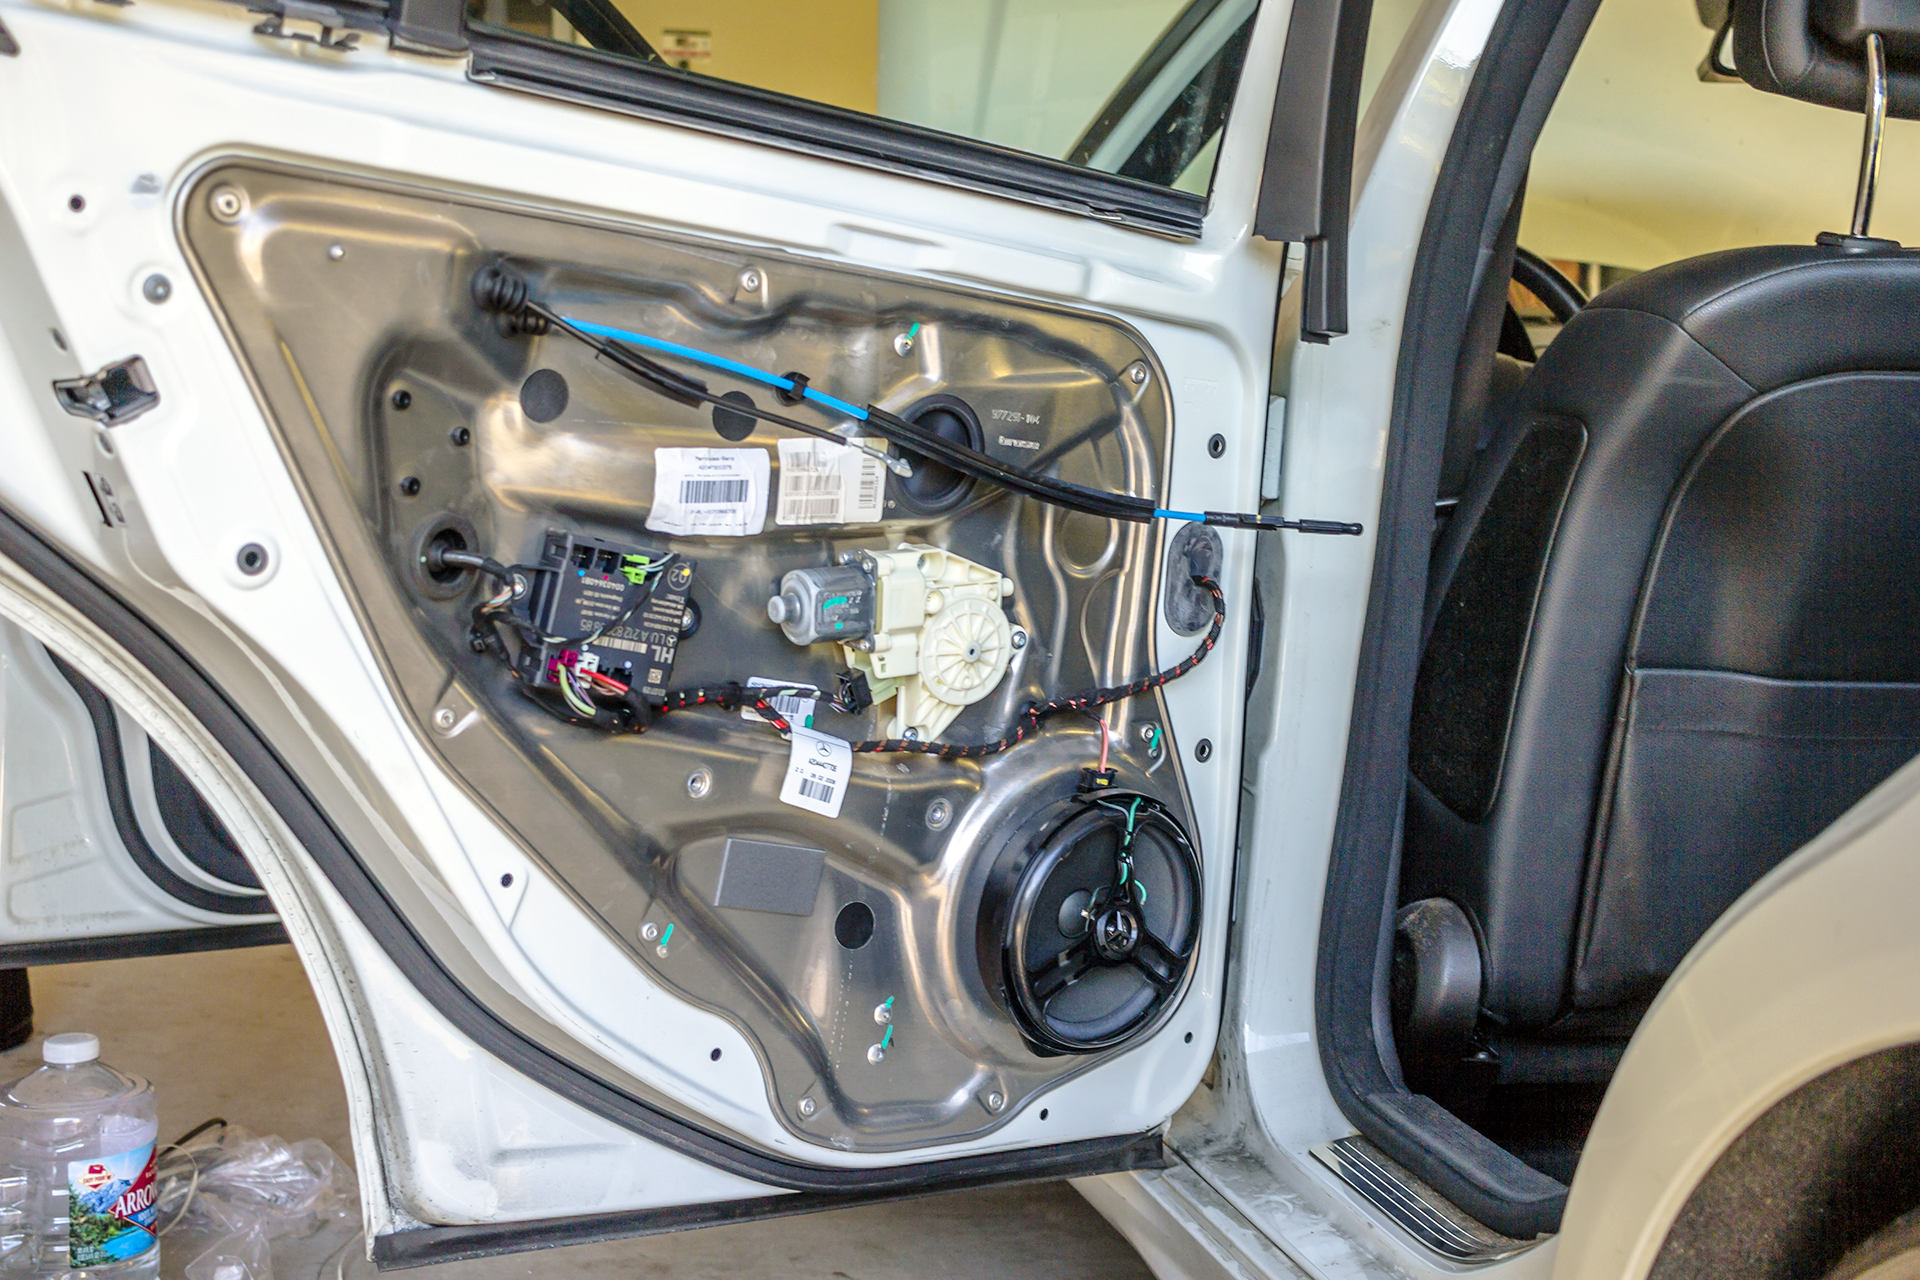 2010 Mercedes Benz C300 Door Panel Removed.jpg